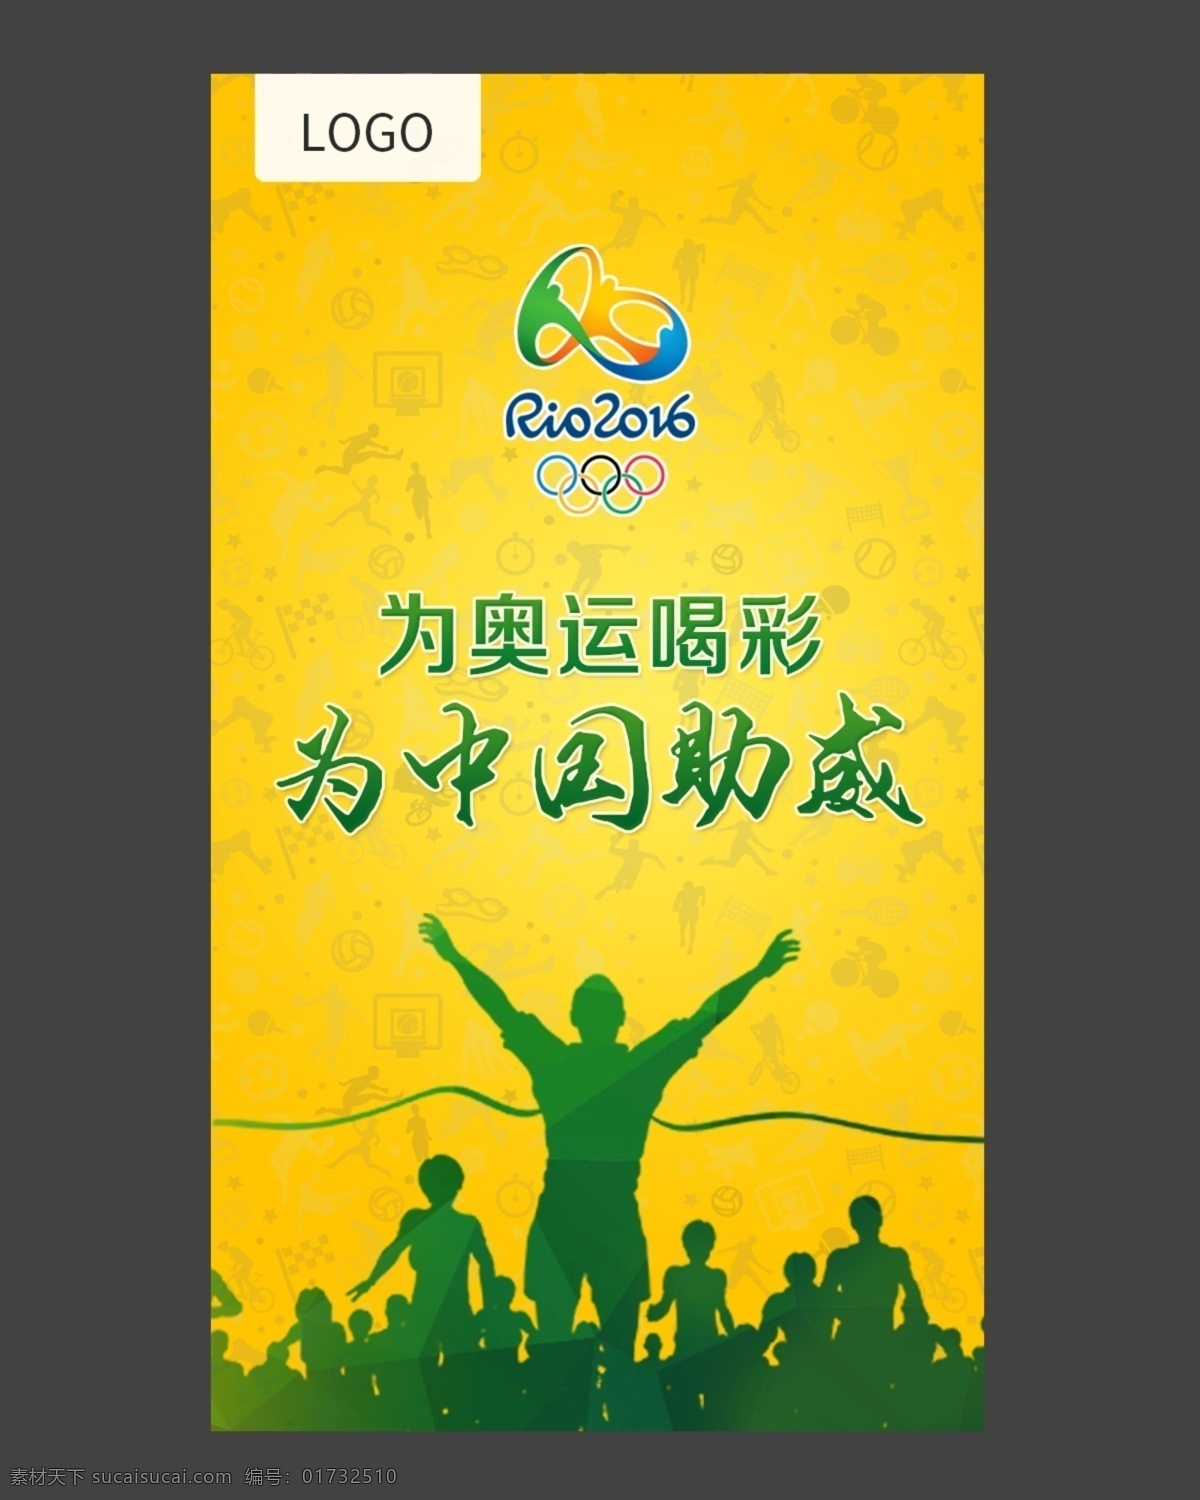 奥运会海报 奥运会 里约奥运会 海报 为奥运喝彩 为中国助威 全屏海报 启动页 黄色背景 绿色 剪影 里约 logo